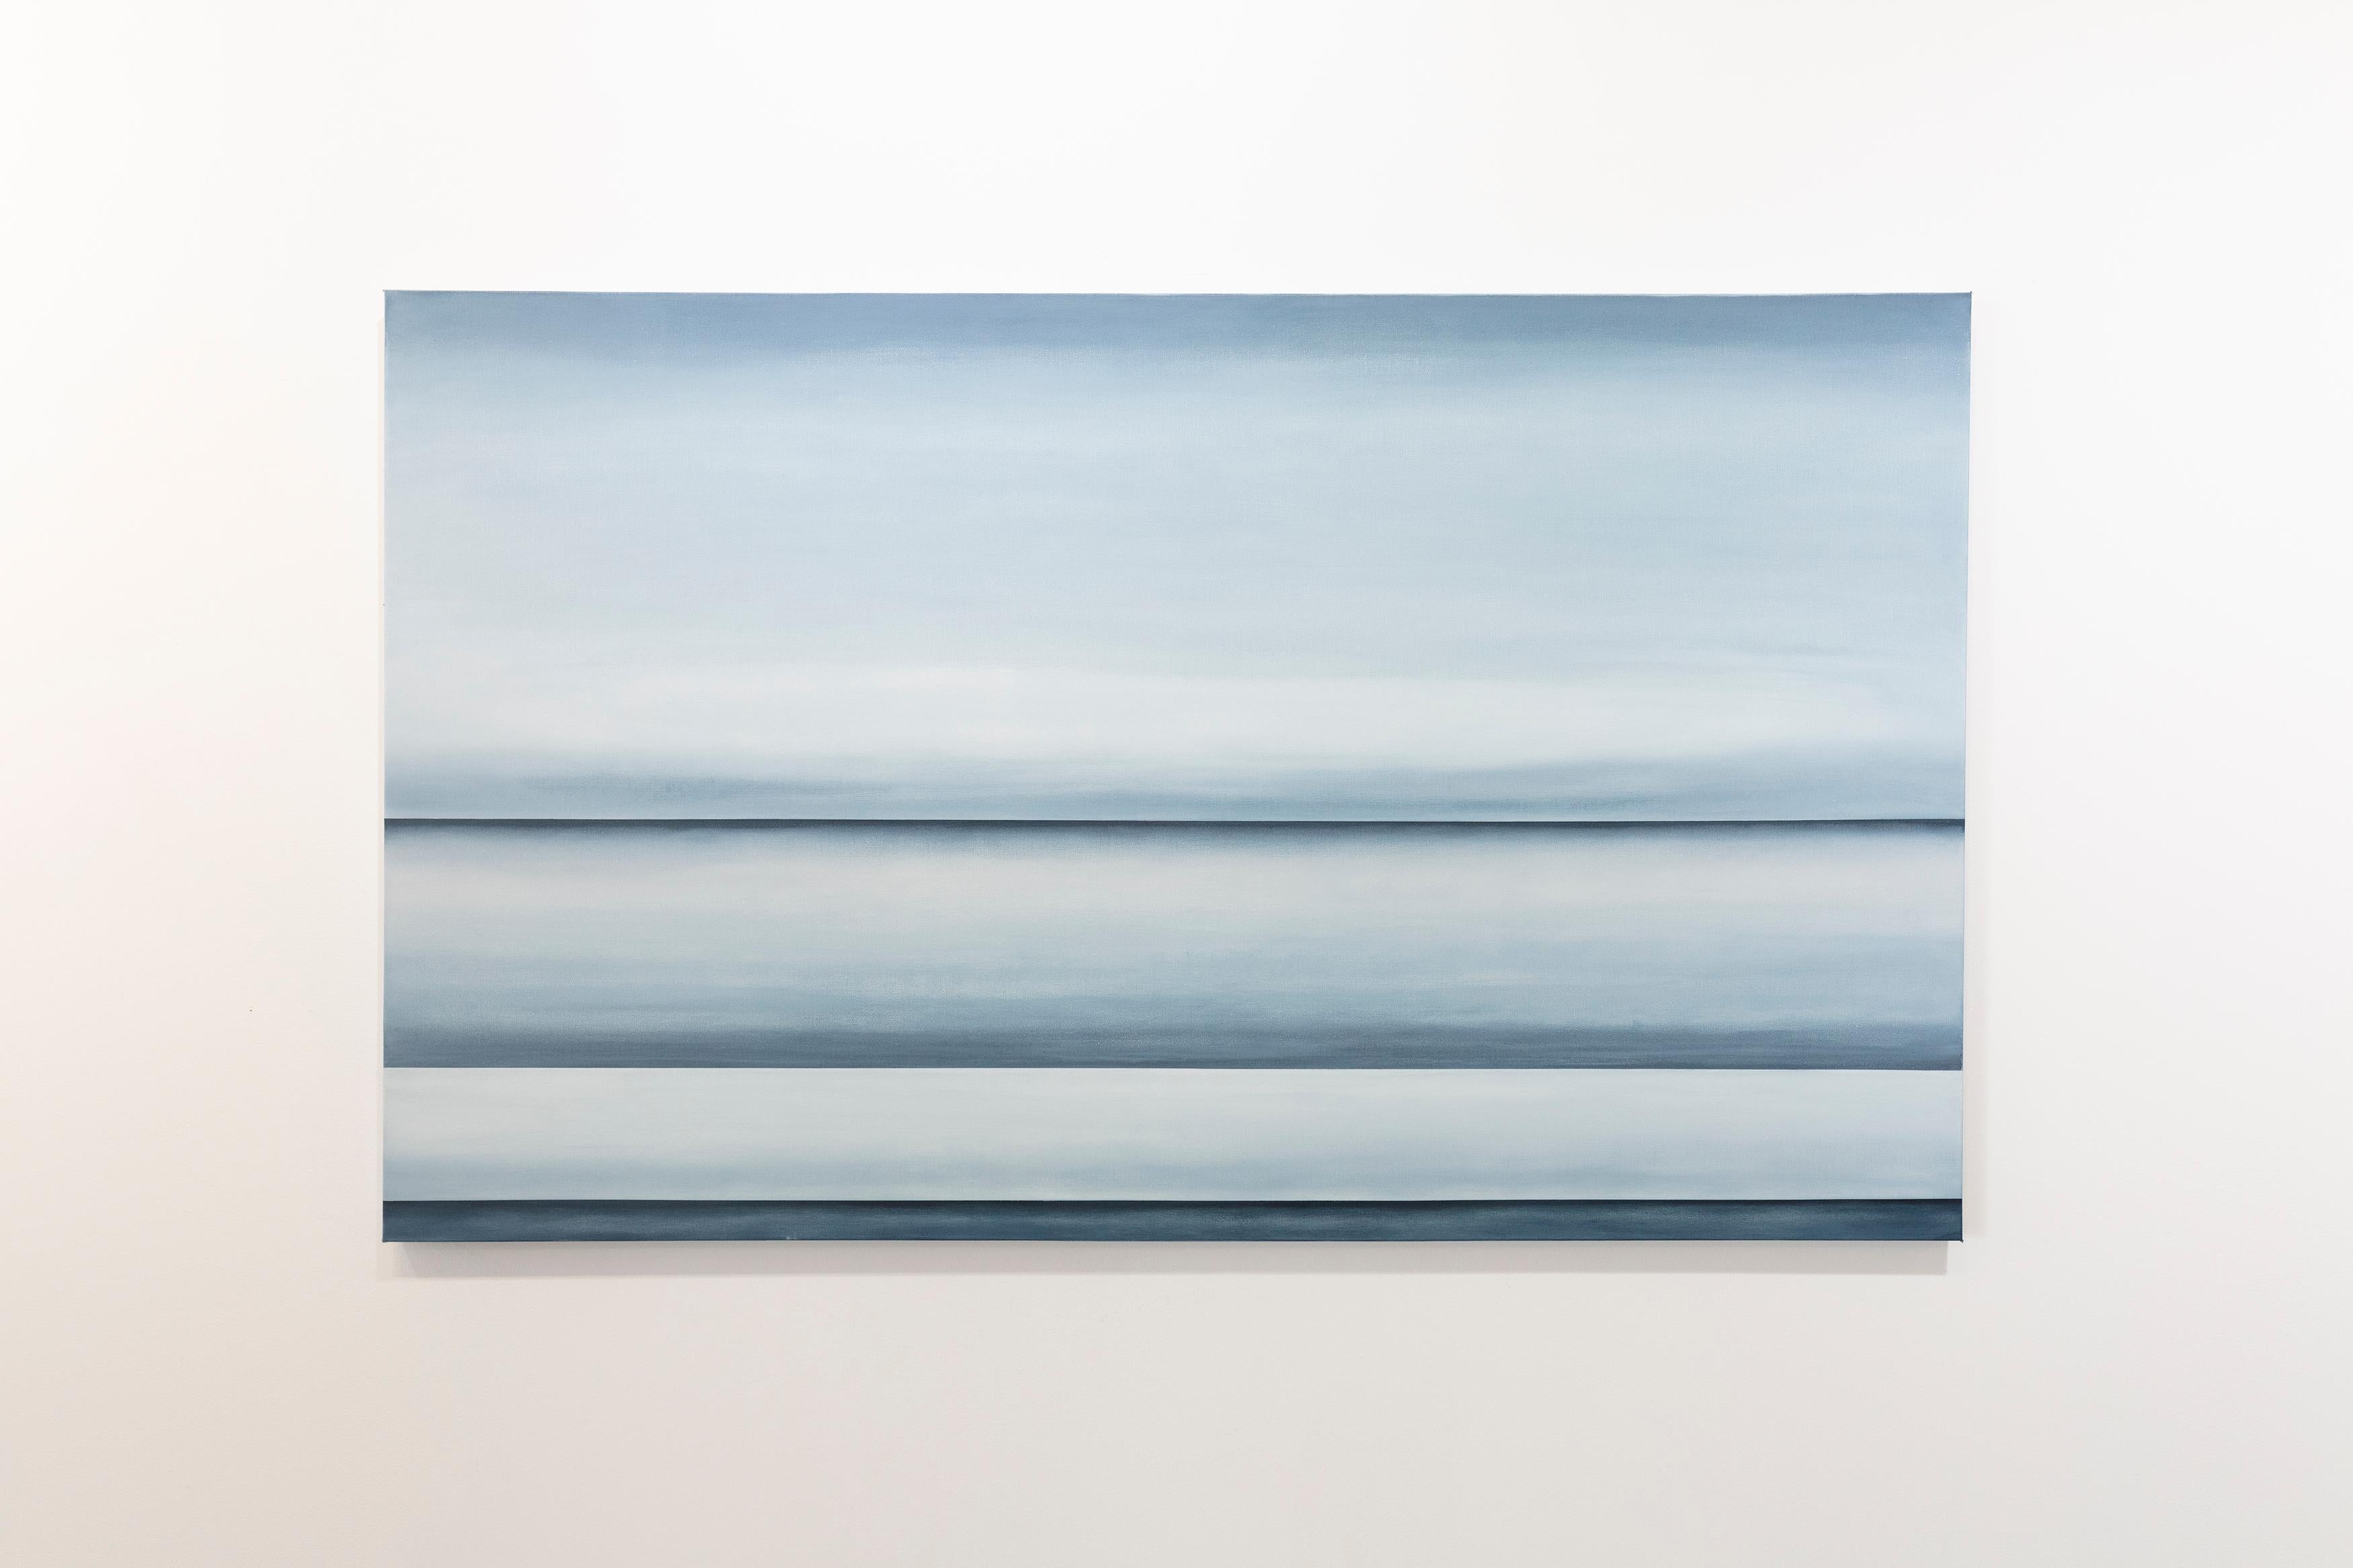 Dieses abstrakte Ölgemälde von Tony Iadicicco zeichnet sich durch eine blaue, monochromatische Farbpalette aus. Das Gemälde hat eine abstrahierte Landschaftskomposition mit drei blauen Horizontlinien, die sich durch die Leinwand ziehen, und sanften